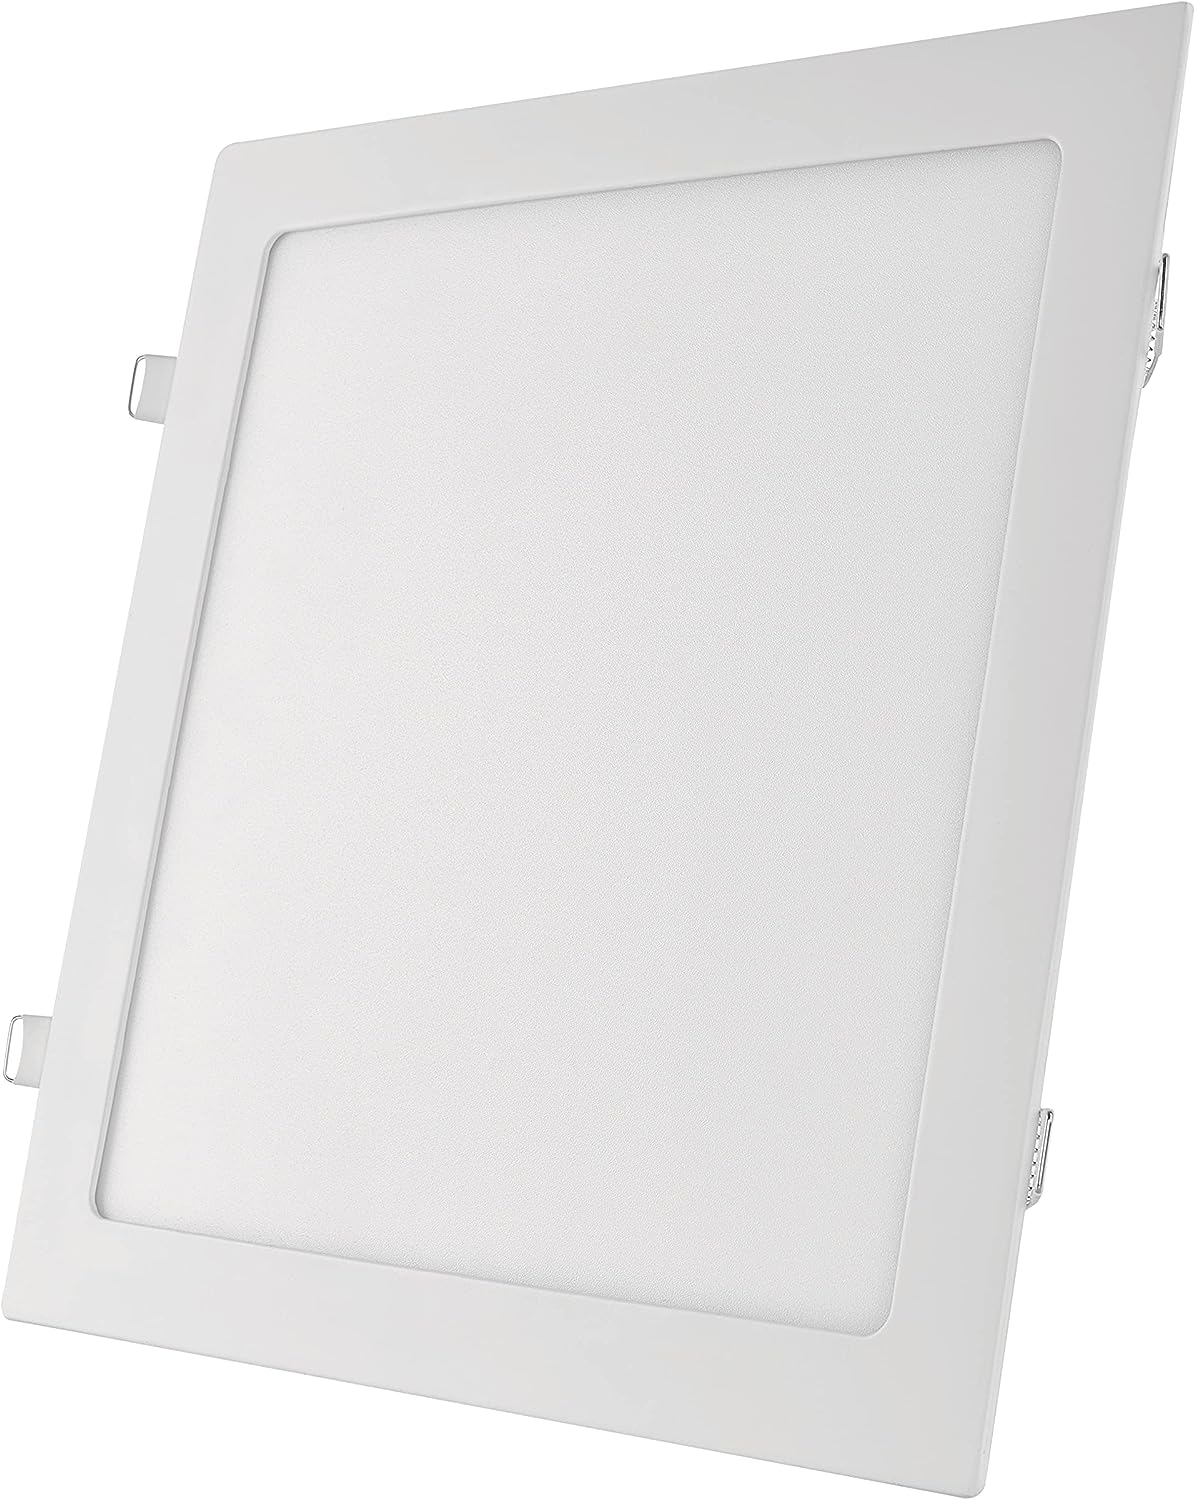 EMOS LED Panel 25 W, quadratische 2100 lm Einbauleuchte, Deckenleuchte in Weiß mit Durchmesser 30 cm, extra flach, Einbautiefe 2,1 cm, Lichtfarbe neutralweiß 4000 K, inkl. LED-Treiber